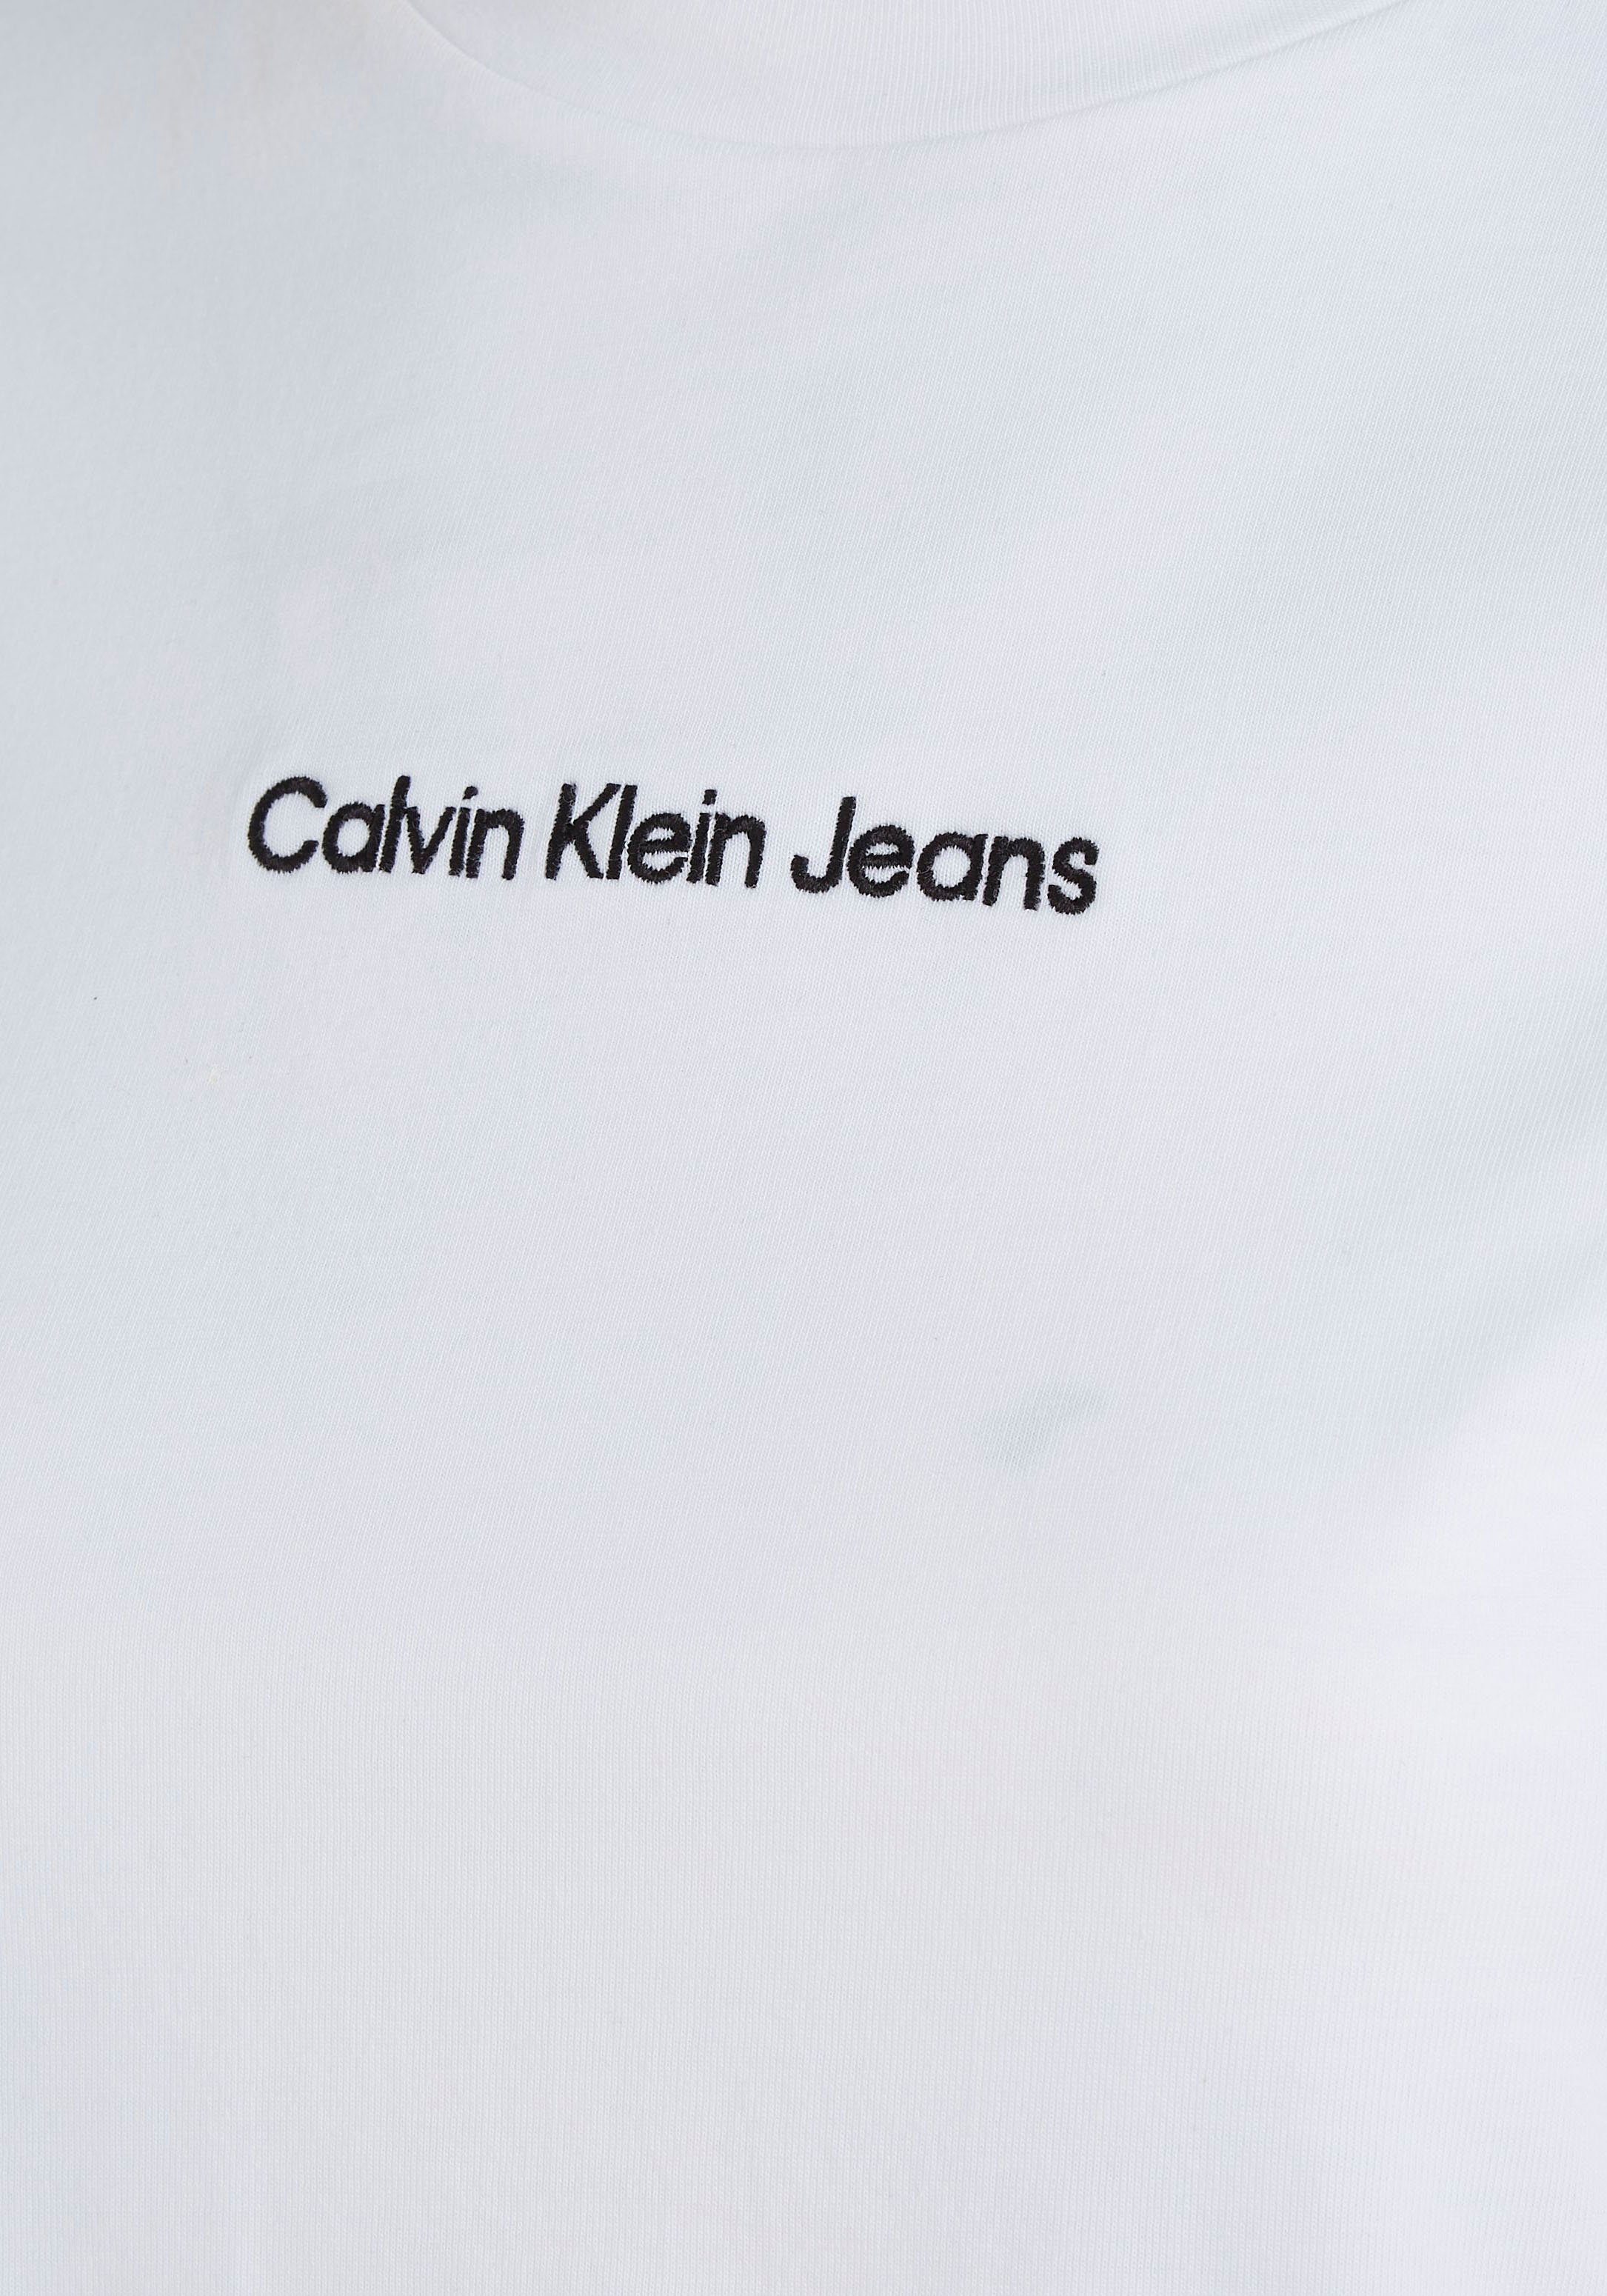 aus T-Shirt Klein reiner Jeans Calvin weiß Baumwolle